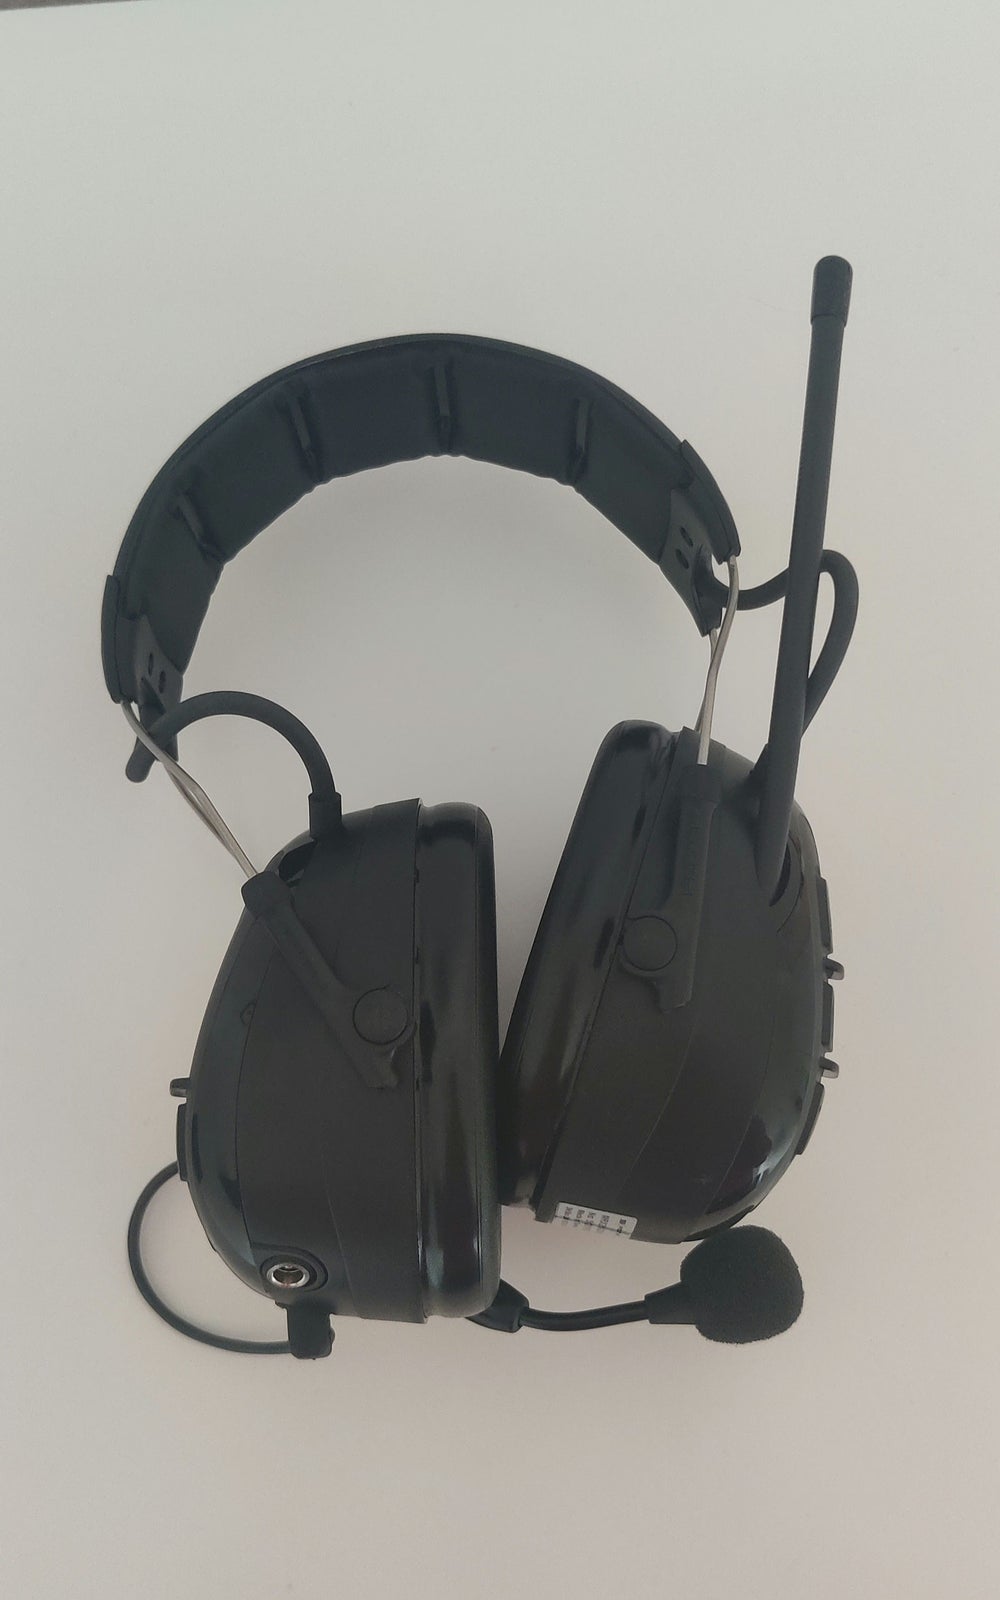 3M Peltor WS Alert XP headset